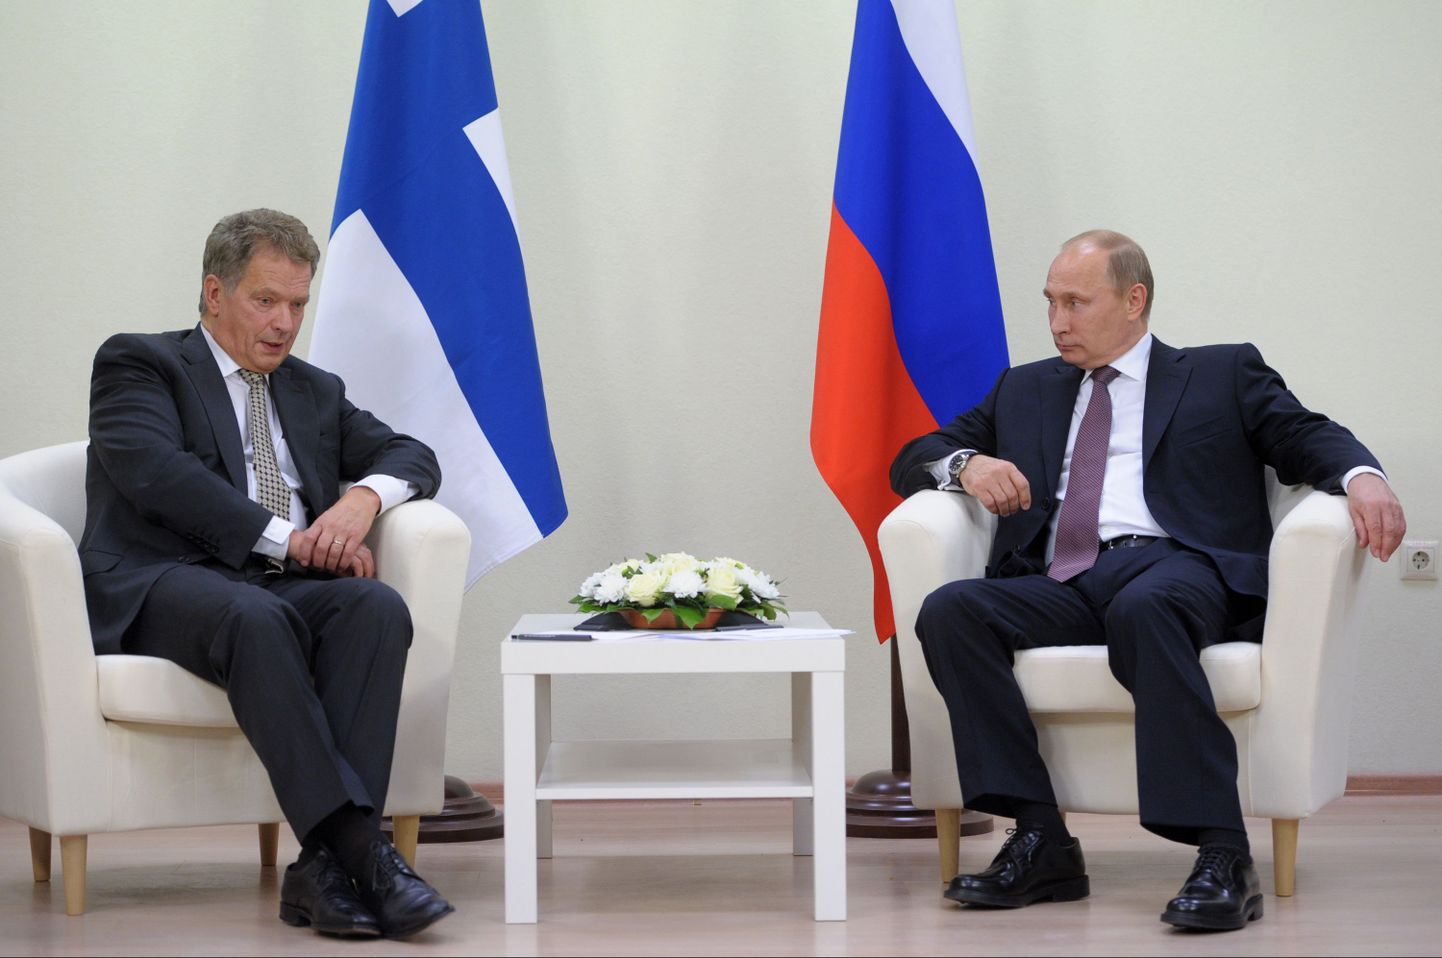 Саули Нийнисте и Владимир Путин.